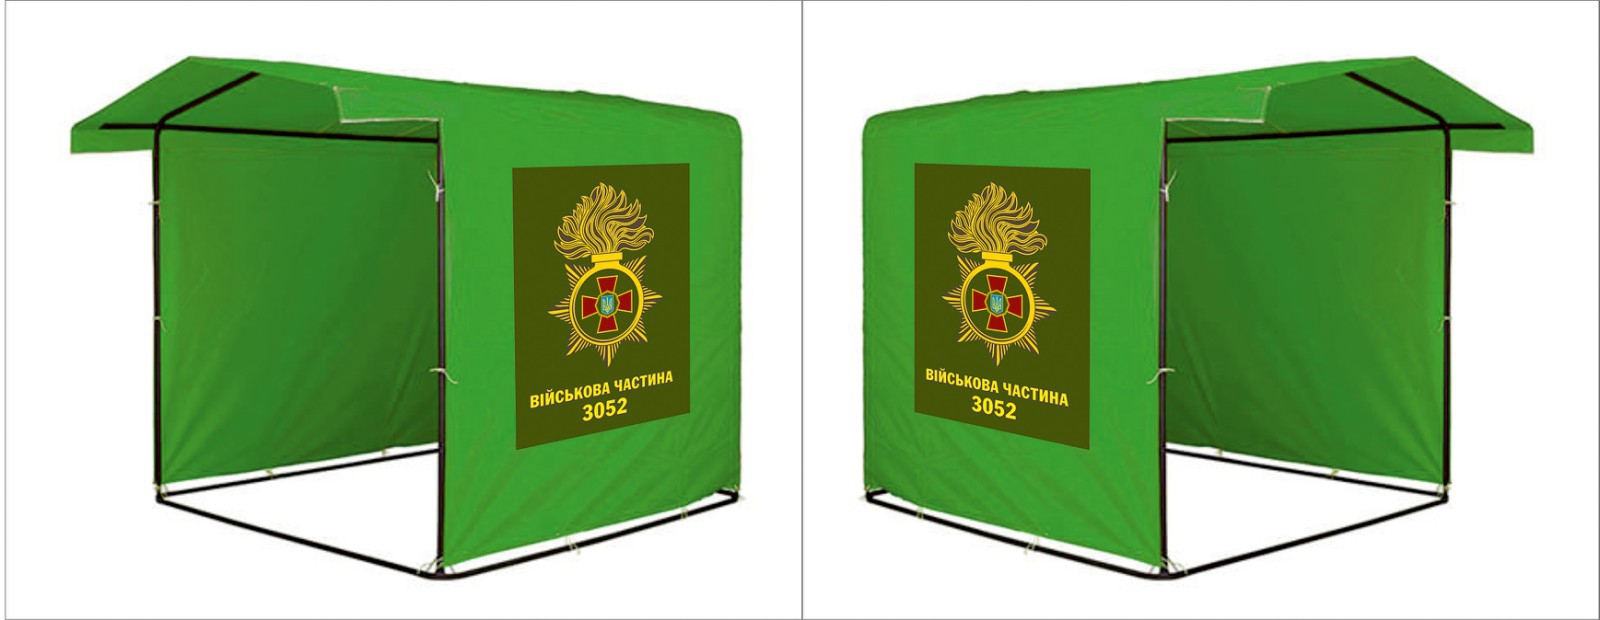 Заказать изготовление палатки с логотипом Харьков